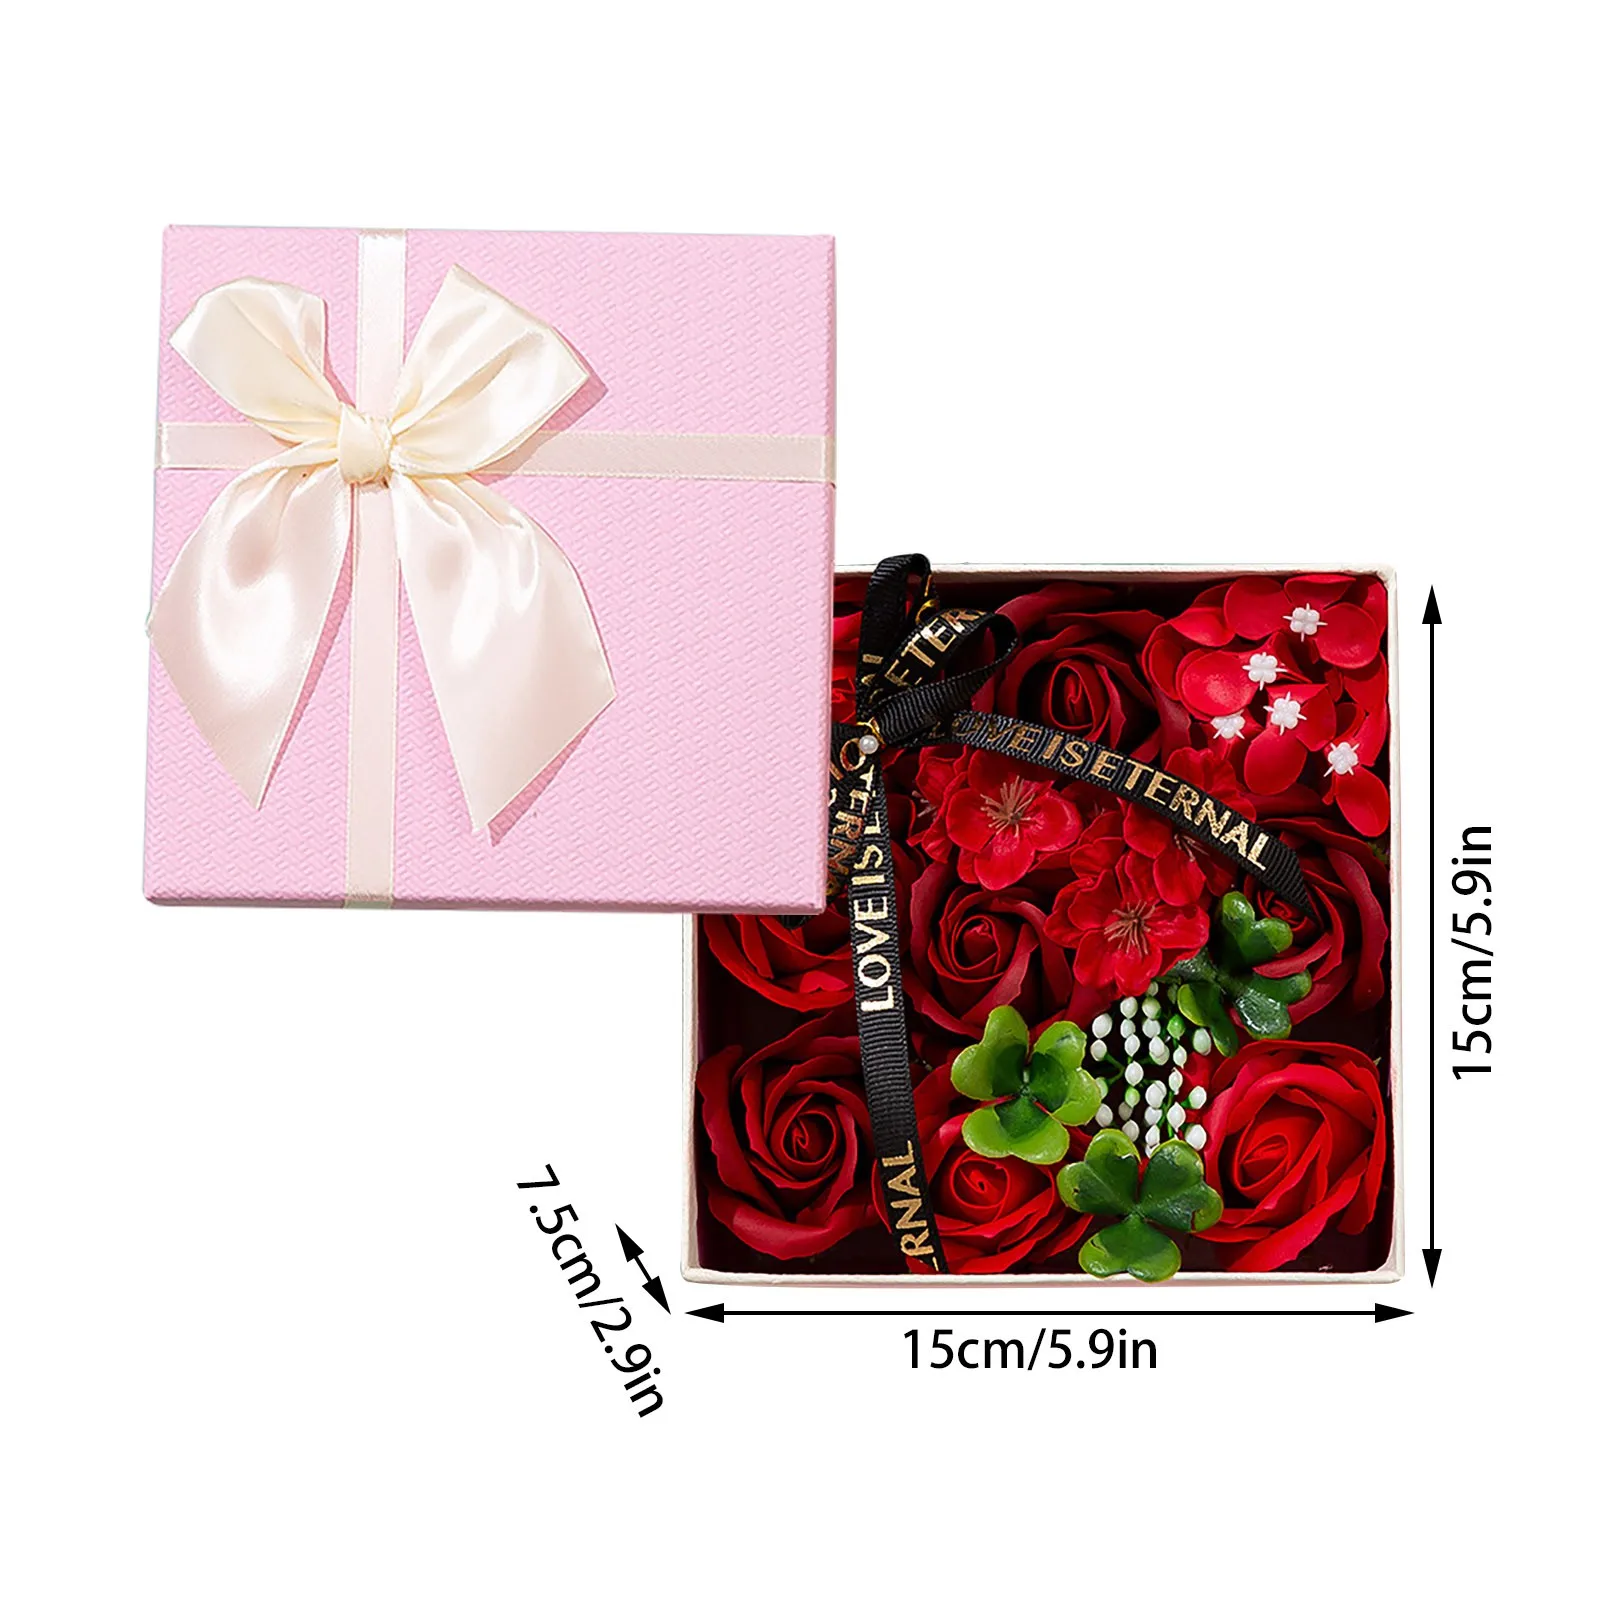 Soap Roses In Gift Box